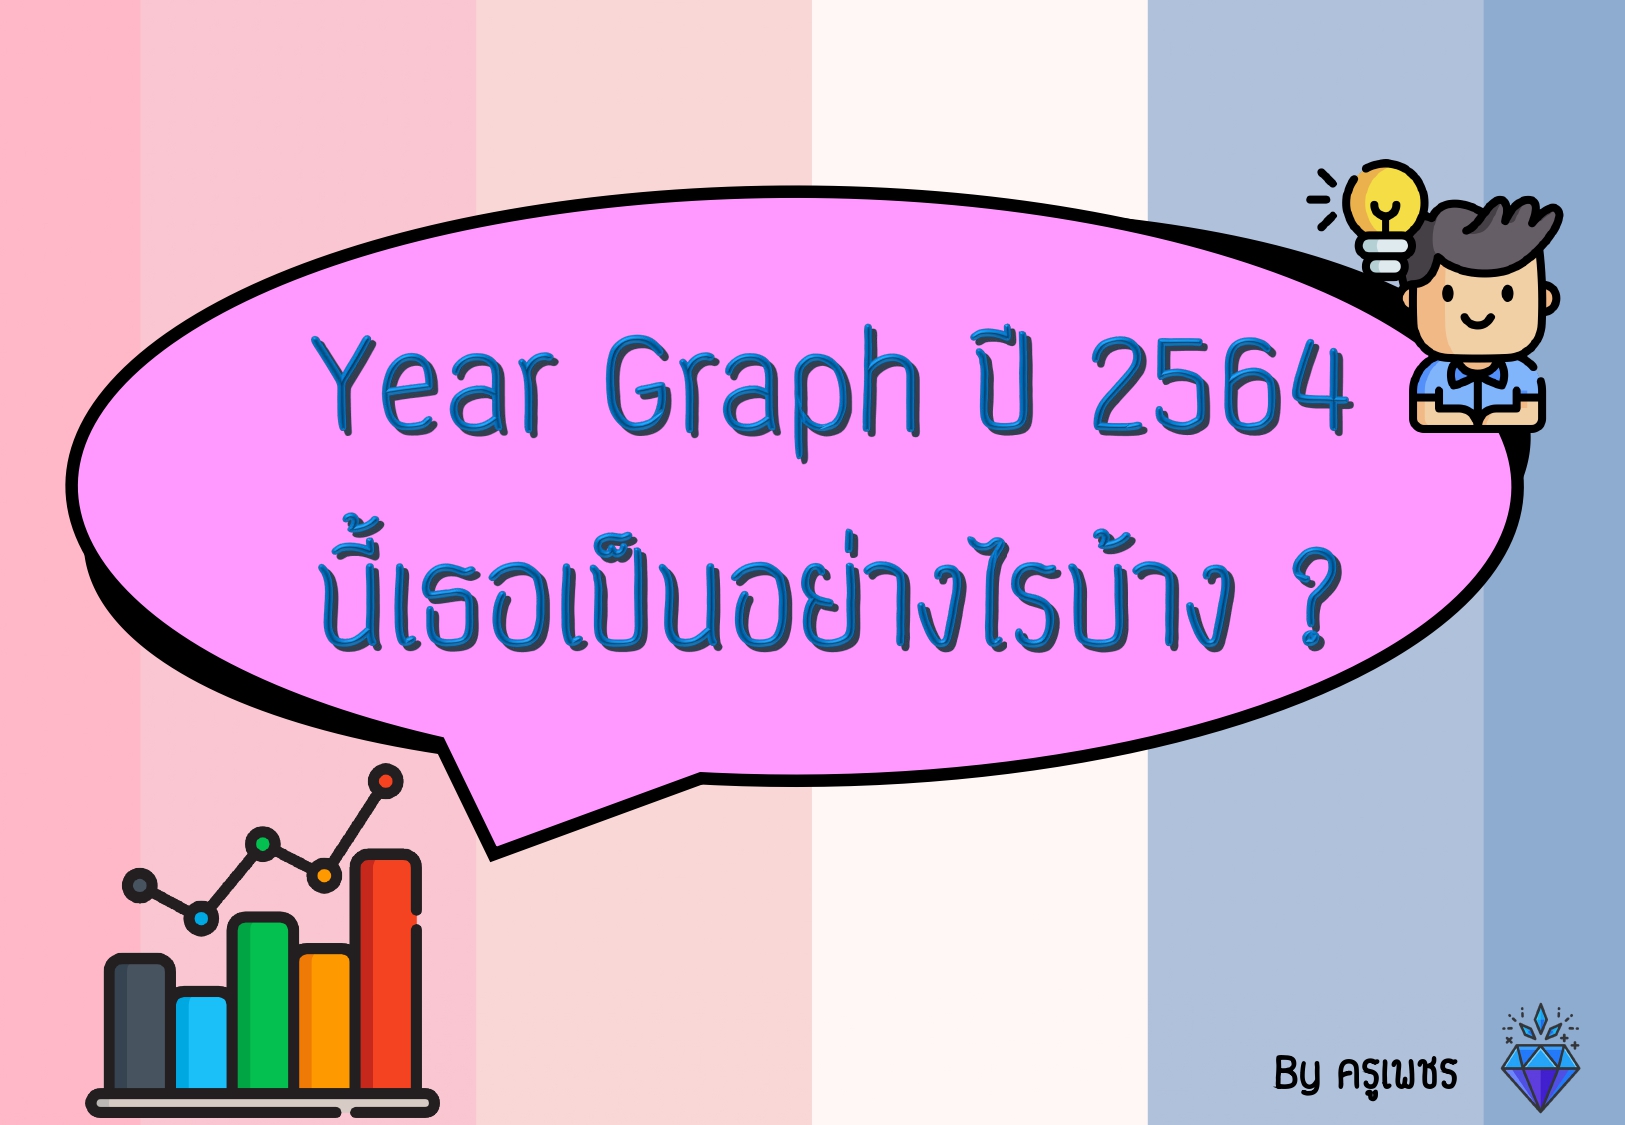 ภาพประกอบไอเดีย Year Graph ปี 2564 นี้เธอเป็นอย่างไรบ้าง ?